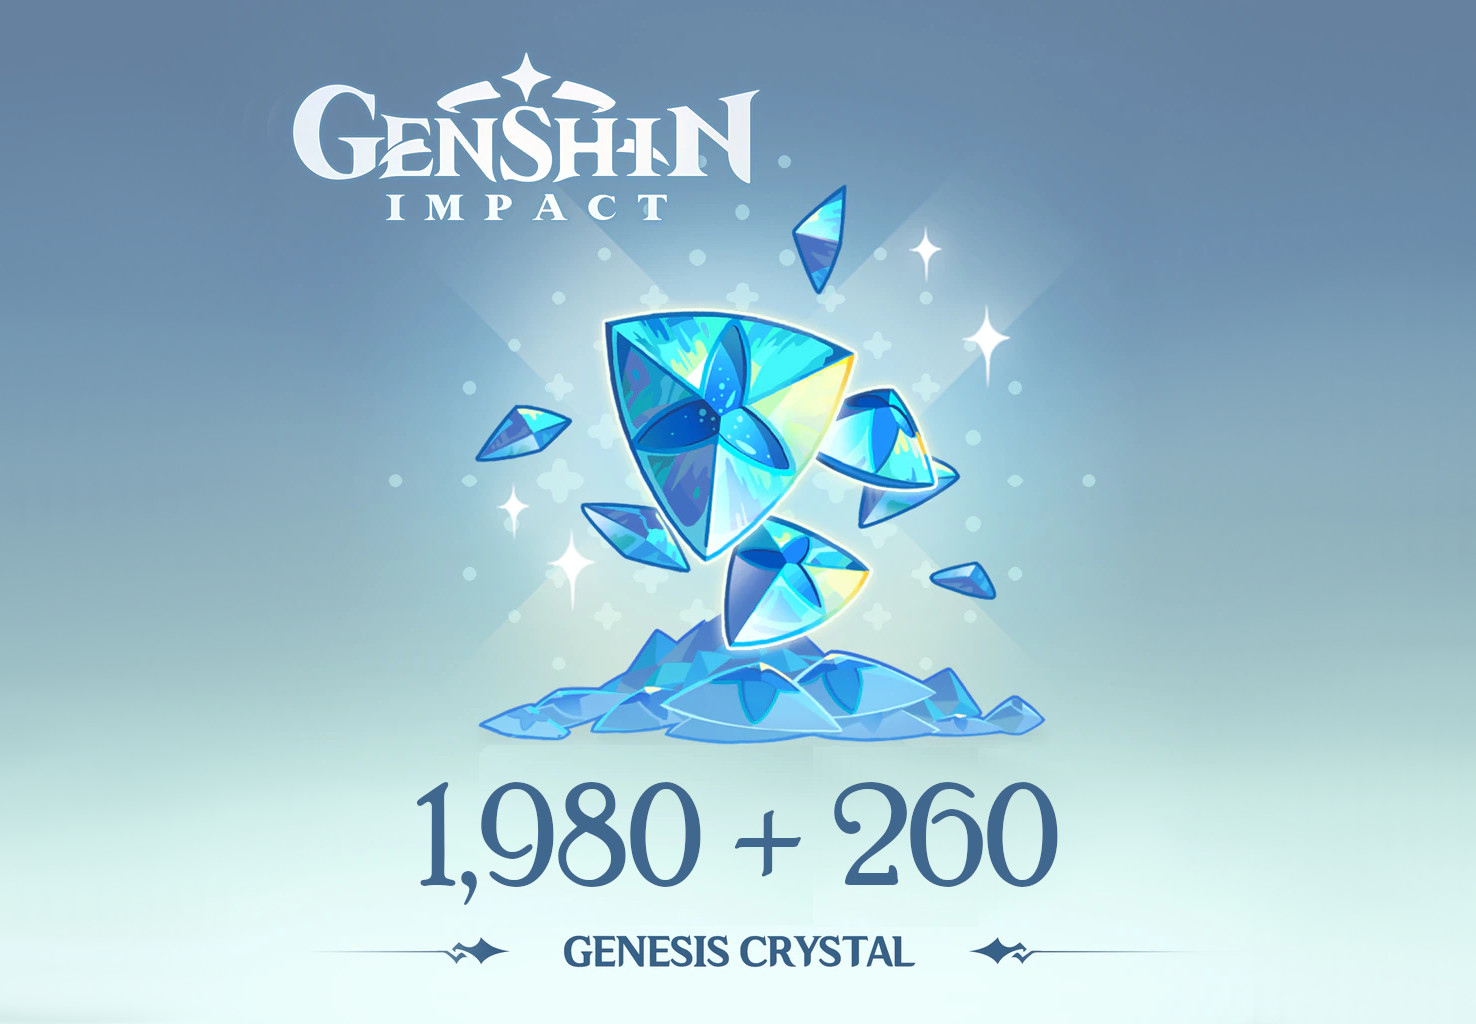 Genshin Impact - 1,980 + 260 Genesis Crystals Reidos Voucher [$ 33.9]